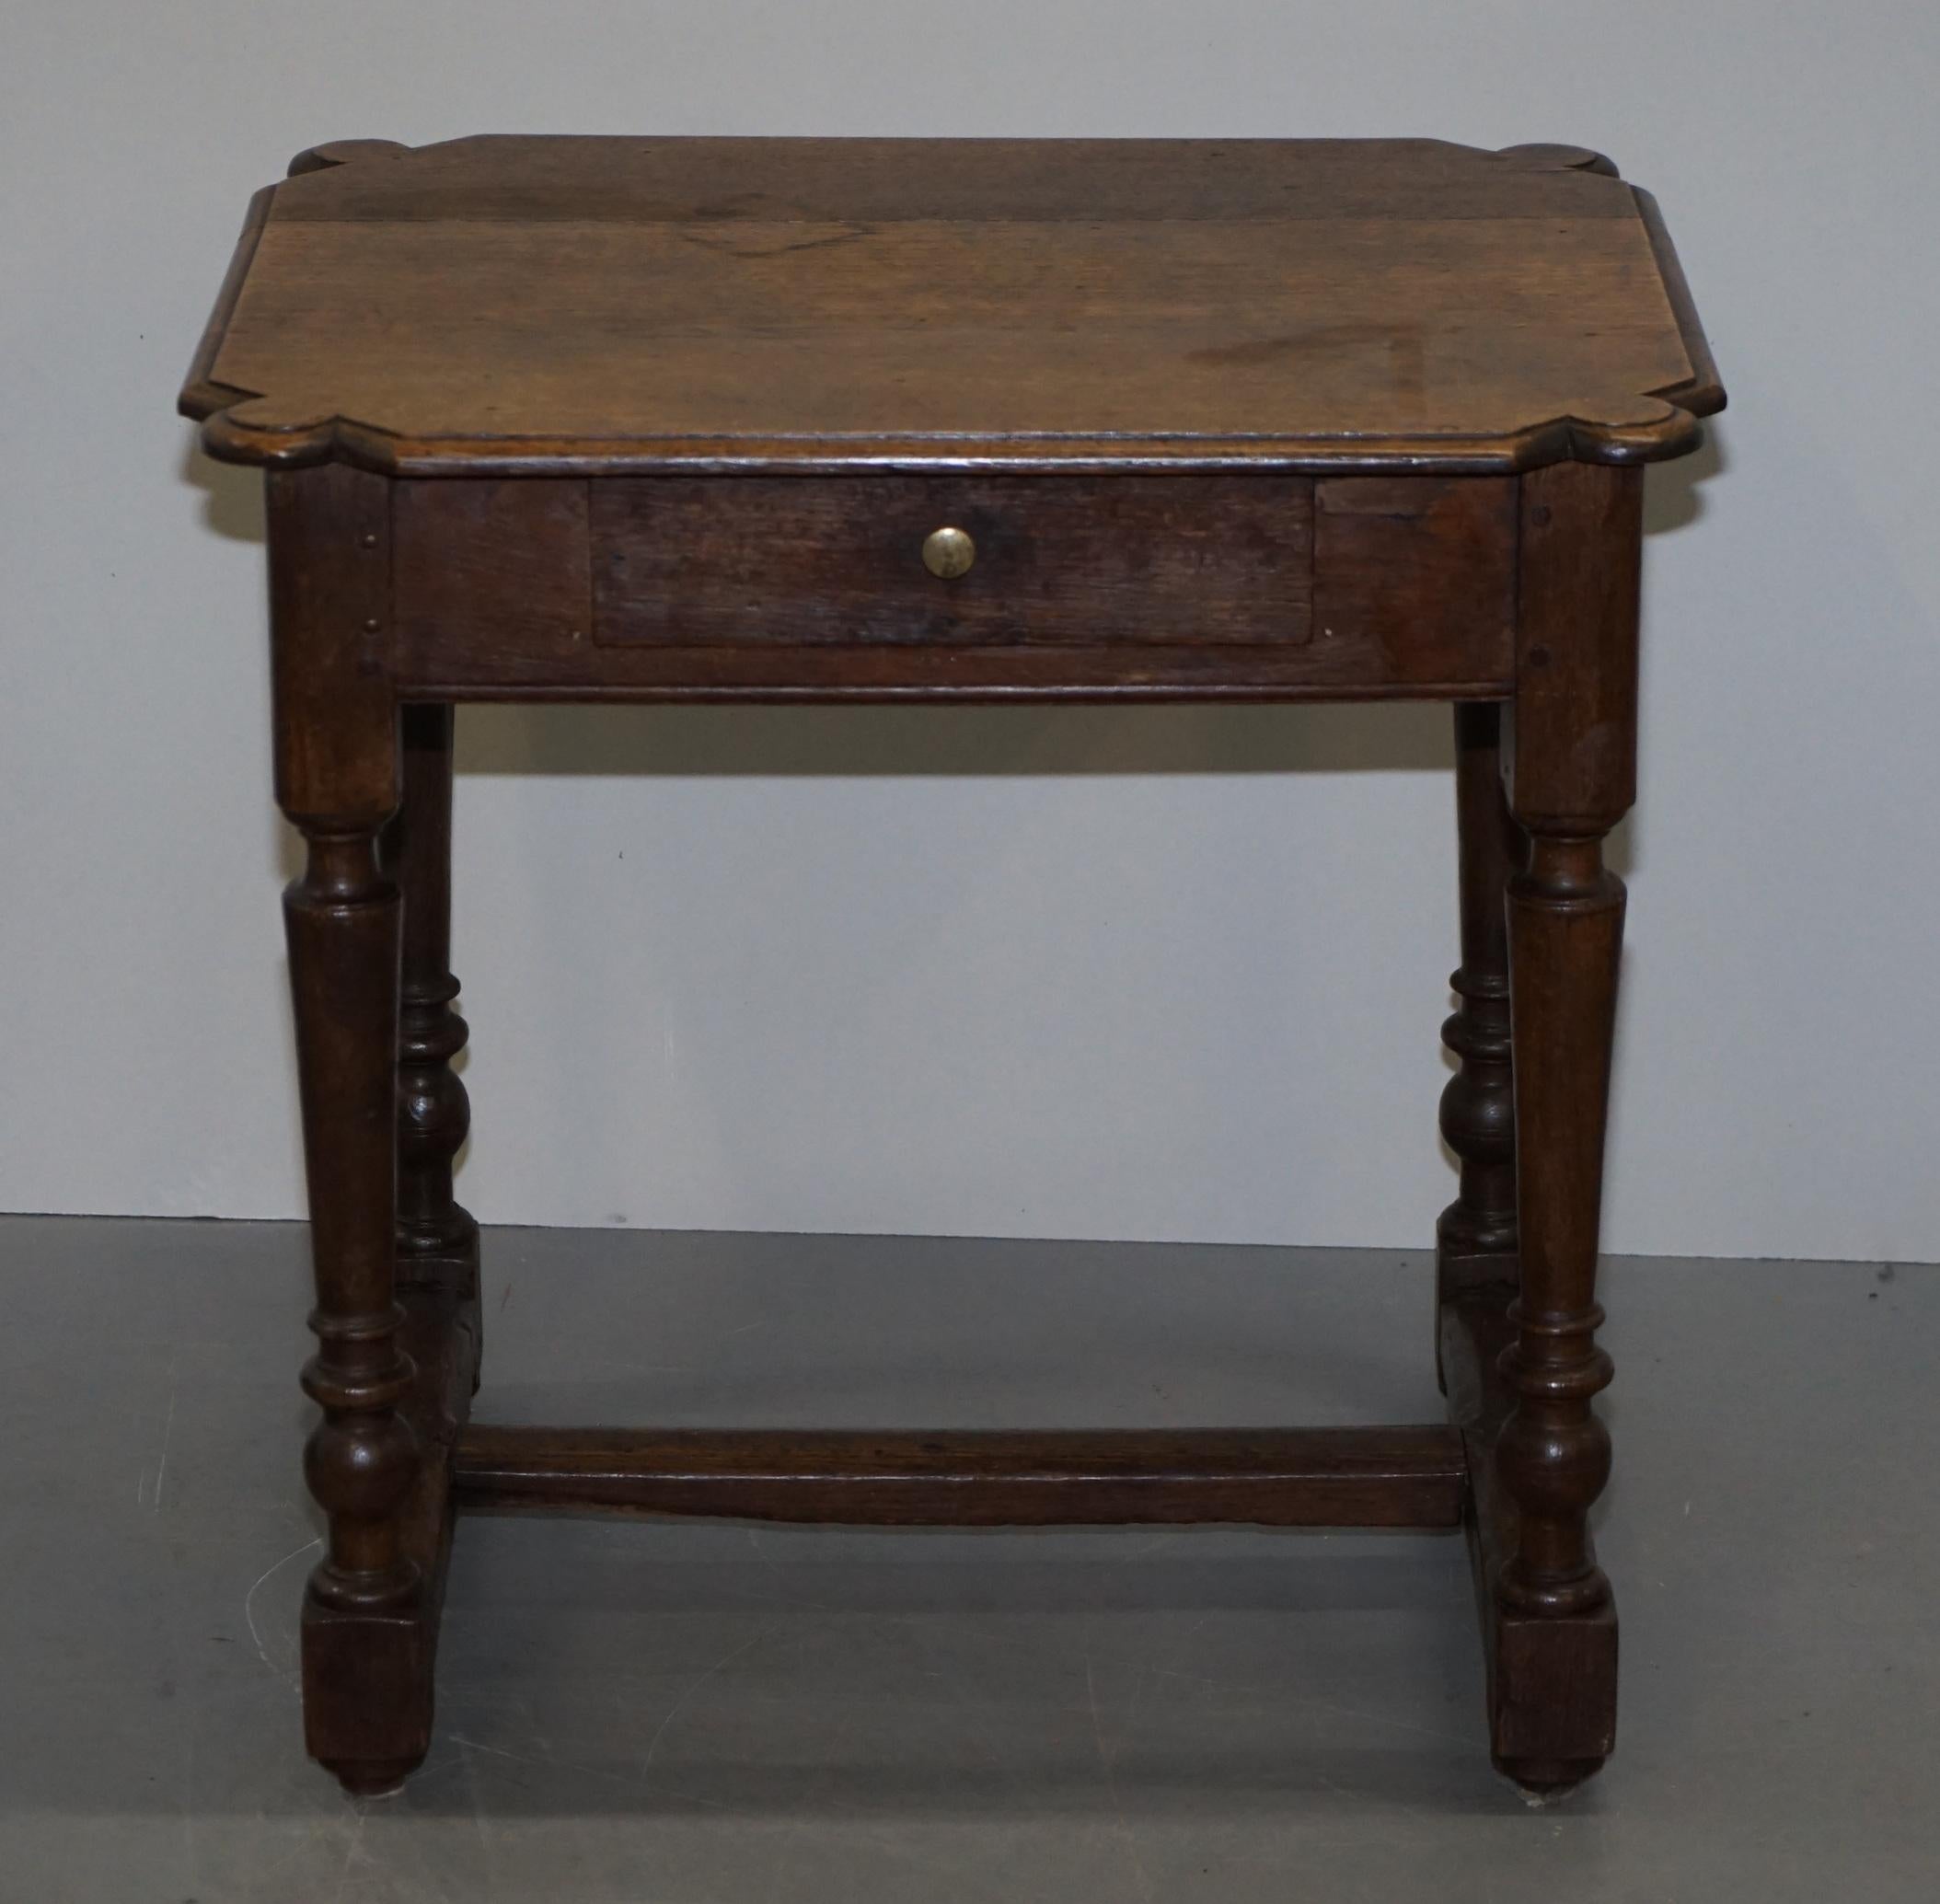 Nous sommes ravis d'offrir à la vente cette belle table d'appoint hollandaise du 18ème siècle avec un seul tiroir

Une bonne table primitive du milieu du 18ème siècle, faite en chêne, traditionnellement goujonnée sur toute sa surface, l'usure et